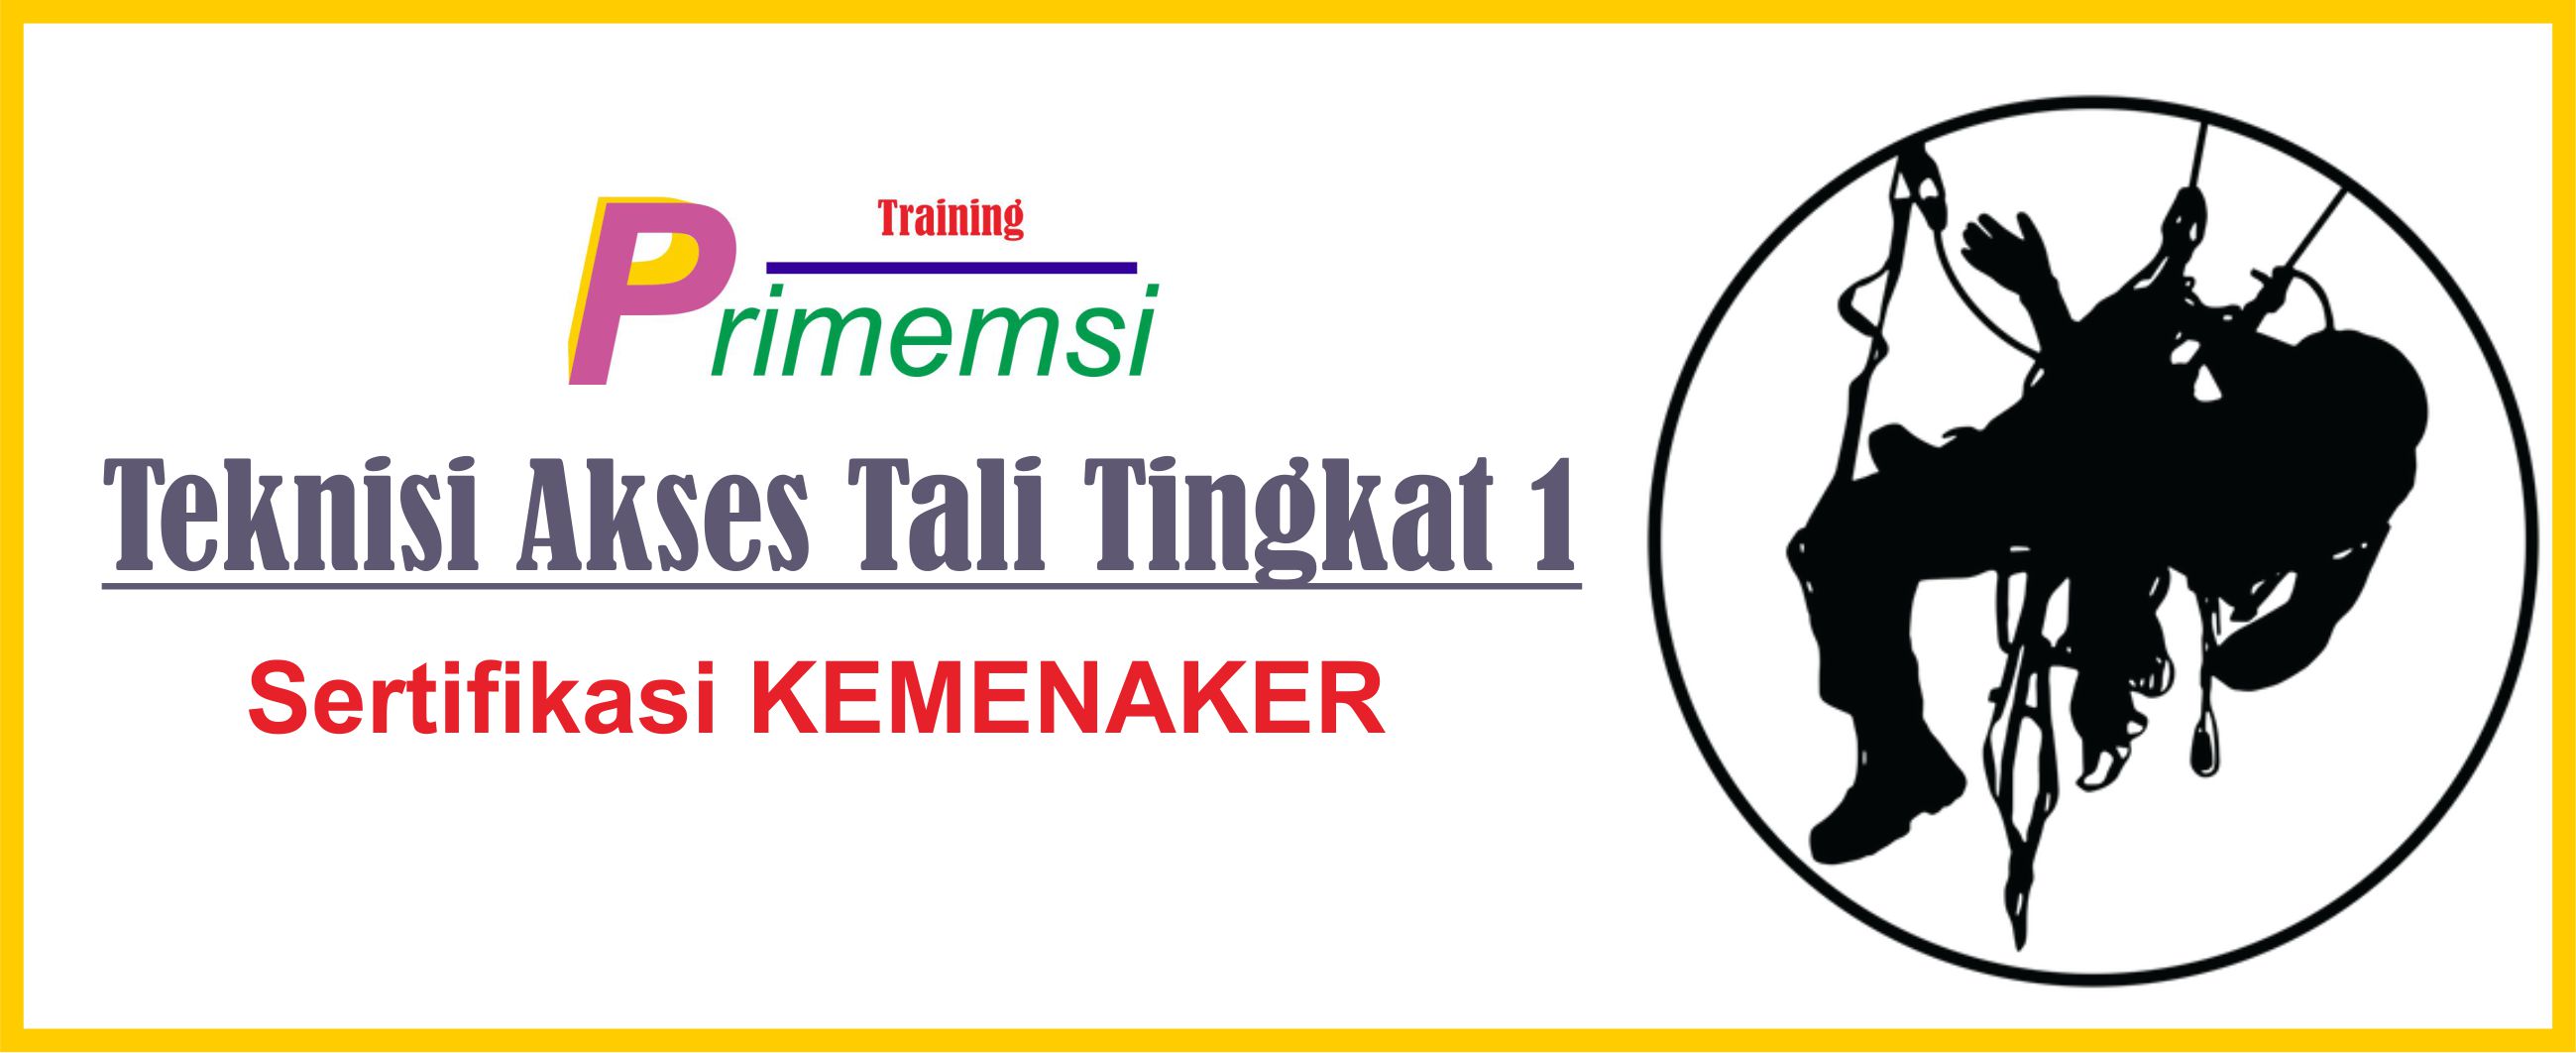 training teknisi akses tali Tingkat 1 sertifikasi KEMENAKER